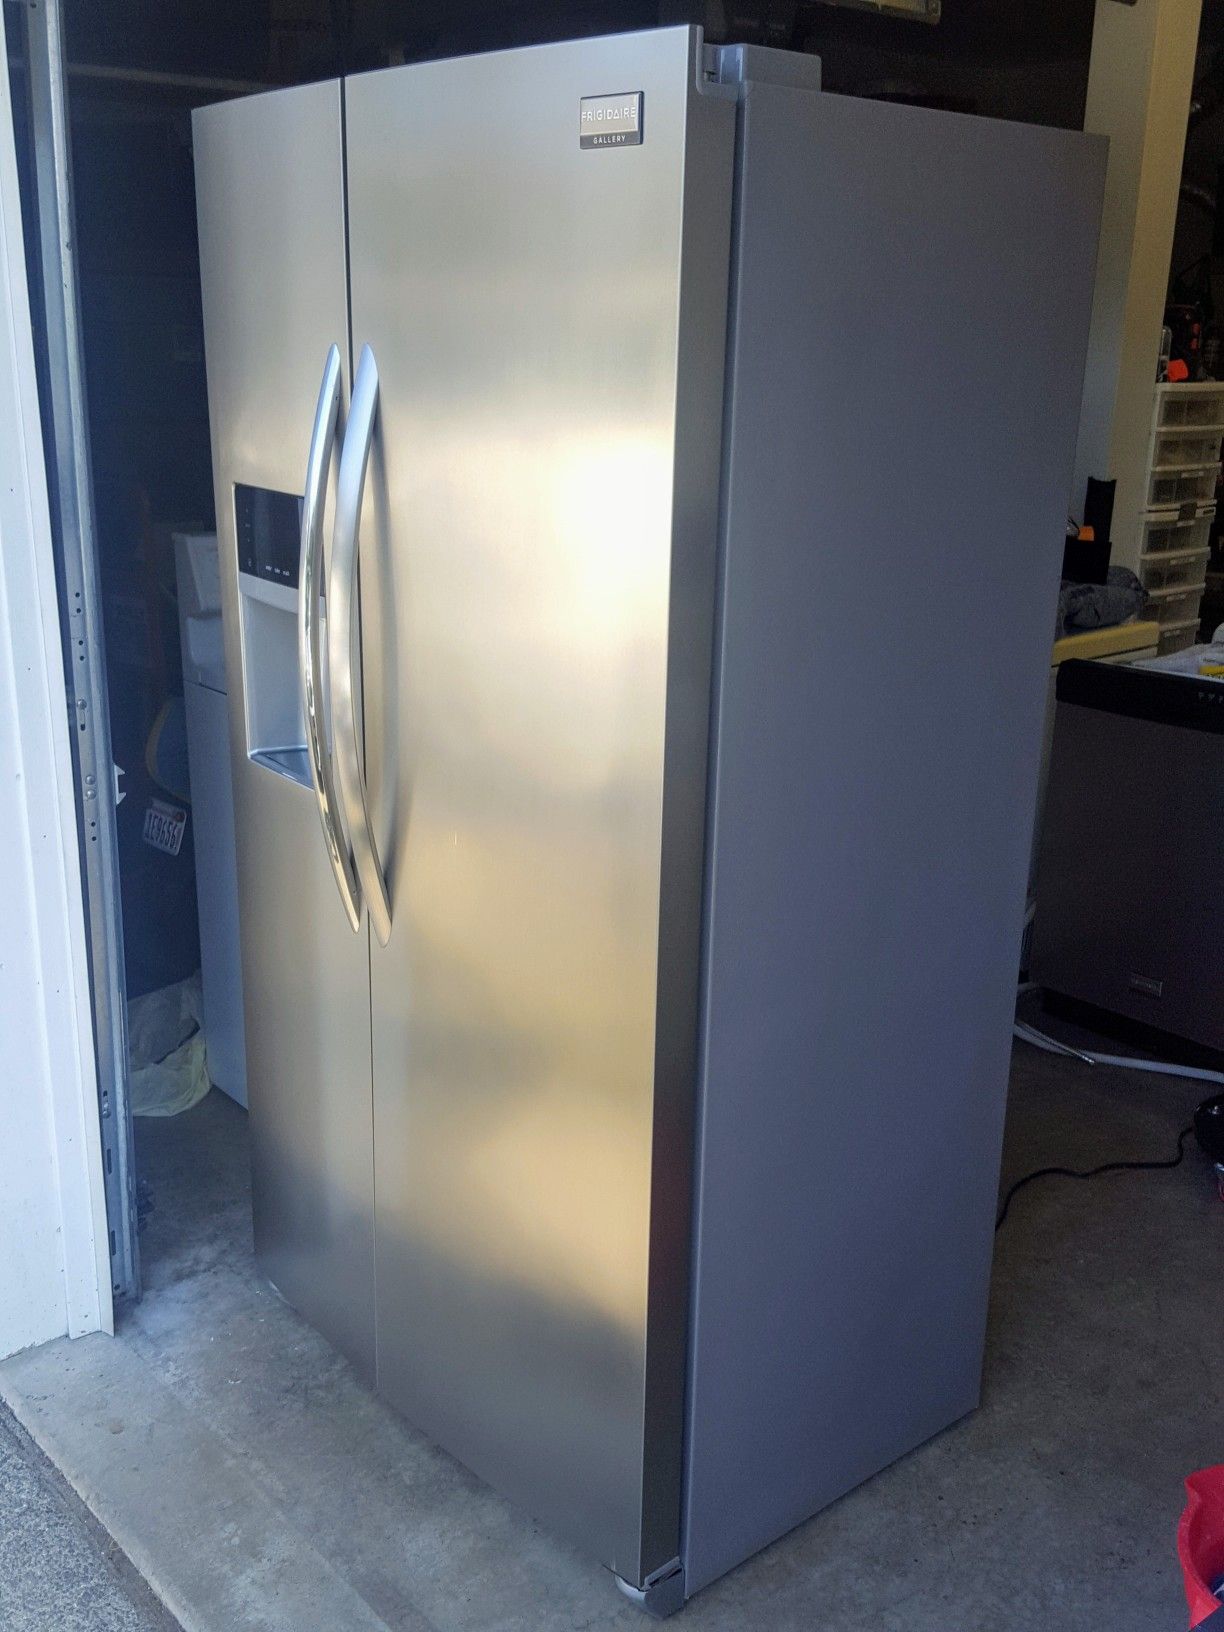 Excellent condition Frigidaire Gallery counter depth refrigerator